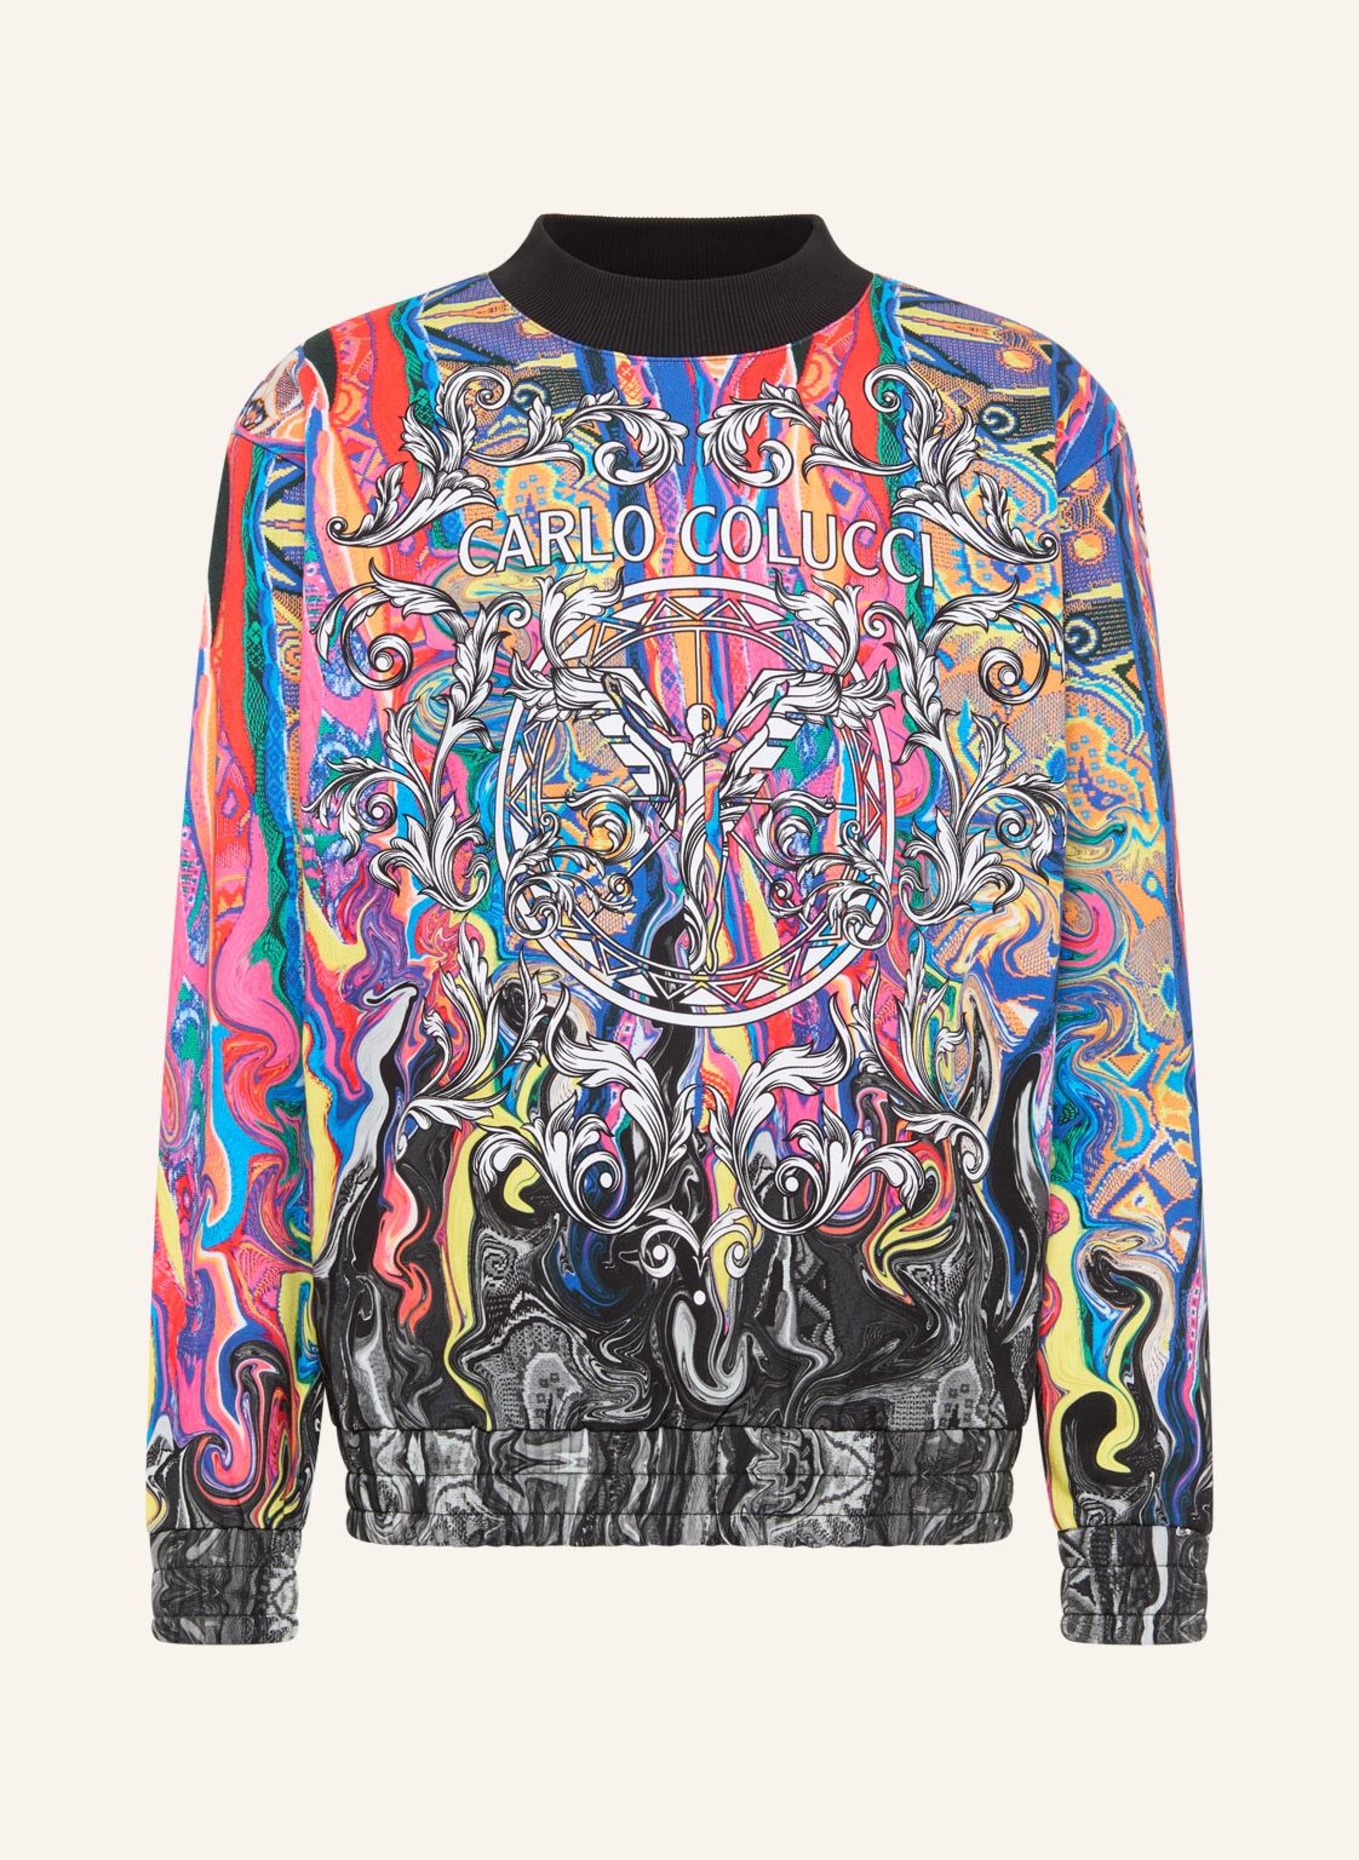 CARLO COLUCCI Sweatshirt "Fusion" DEMATTE, Farbe: ROT (Bild 1)